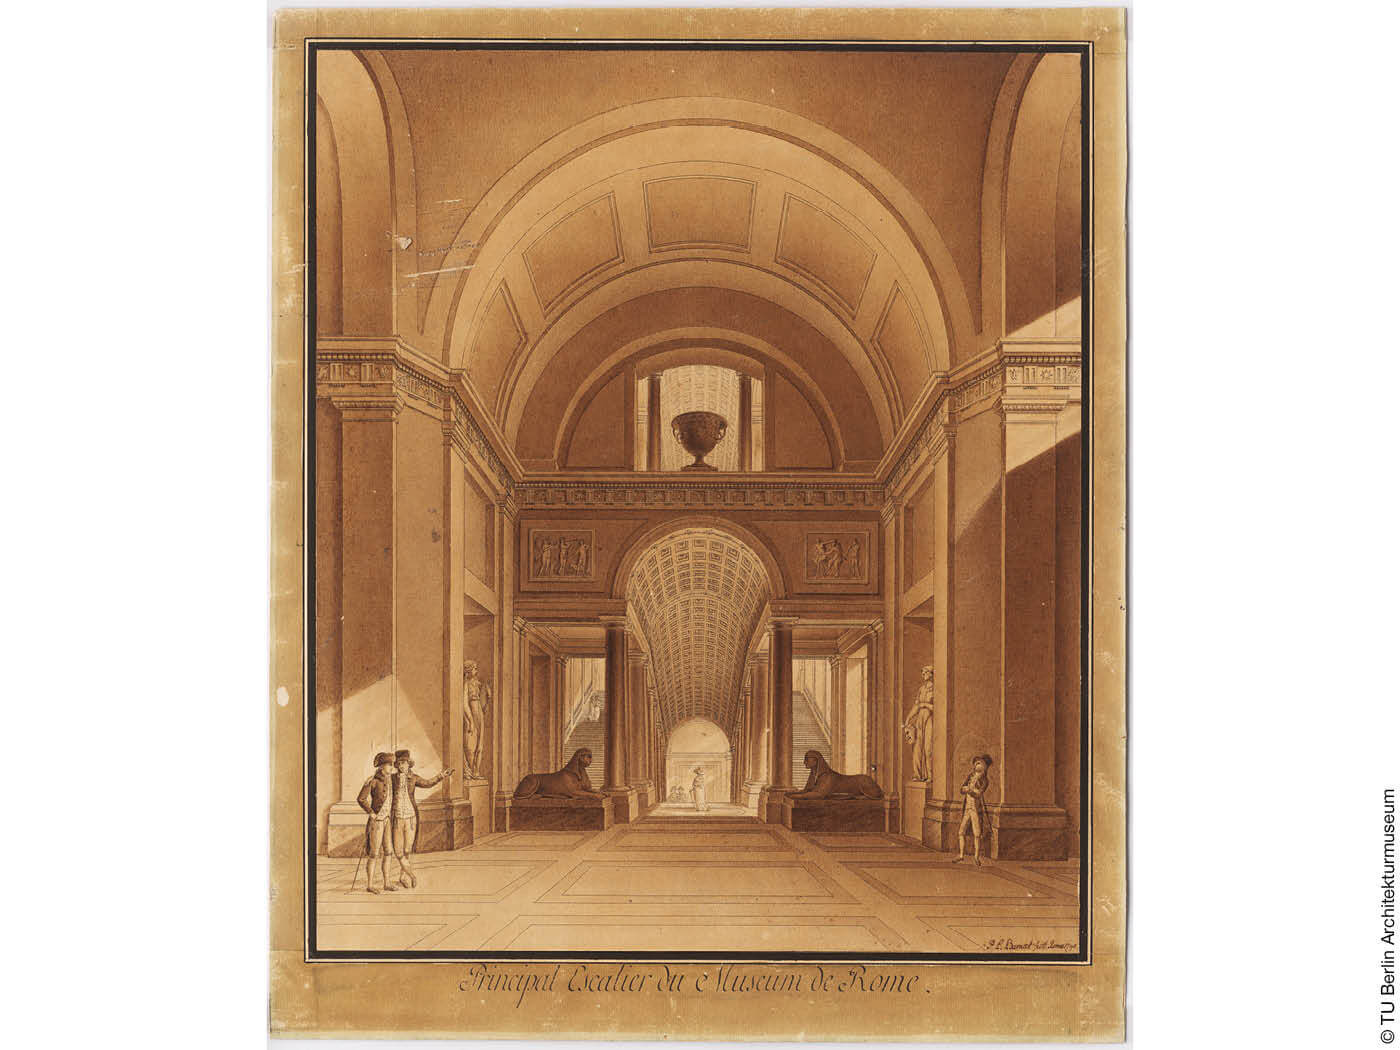 Historische Zeichnung der Vatikanischen Museen aus dem Architekturmuseum TU Berlin